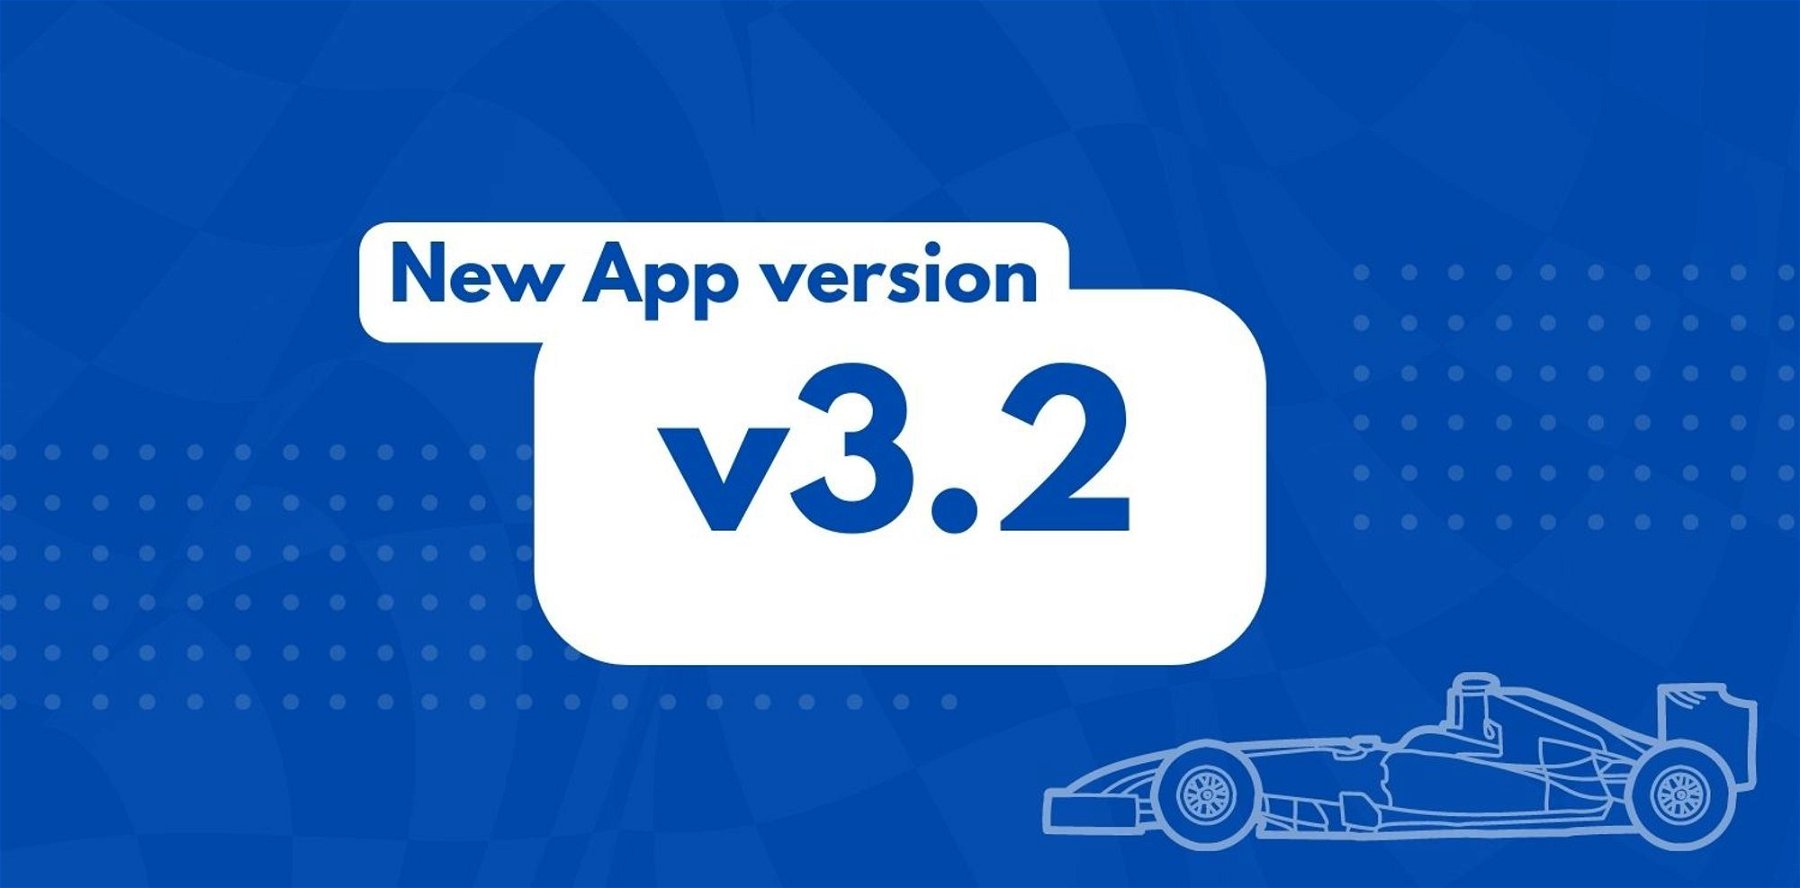 New Telemetry App version v3.2.0